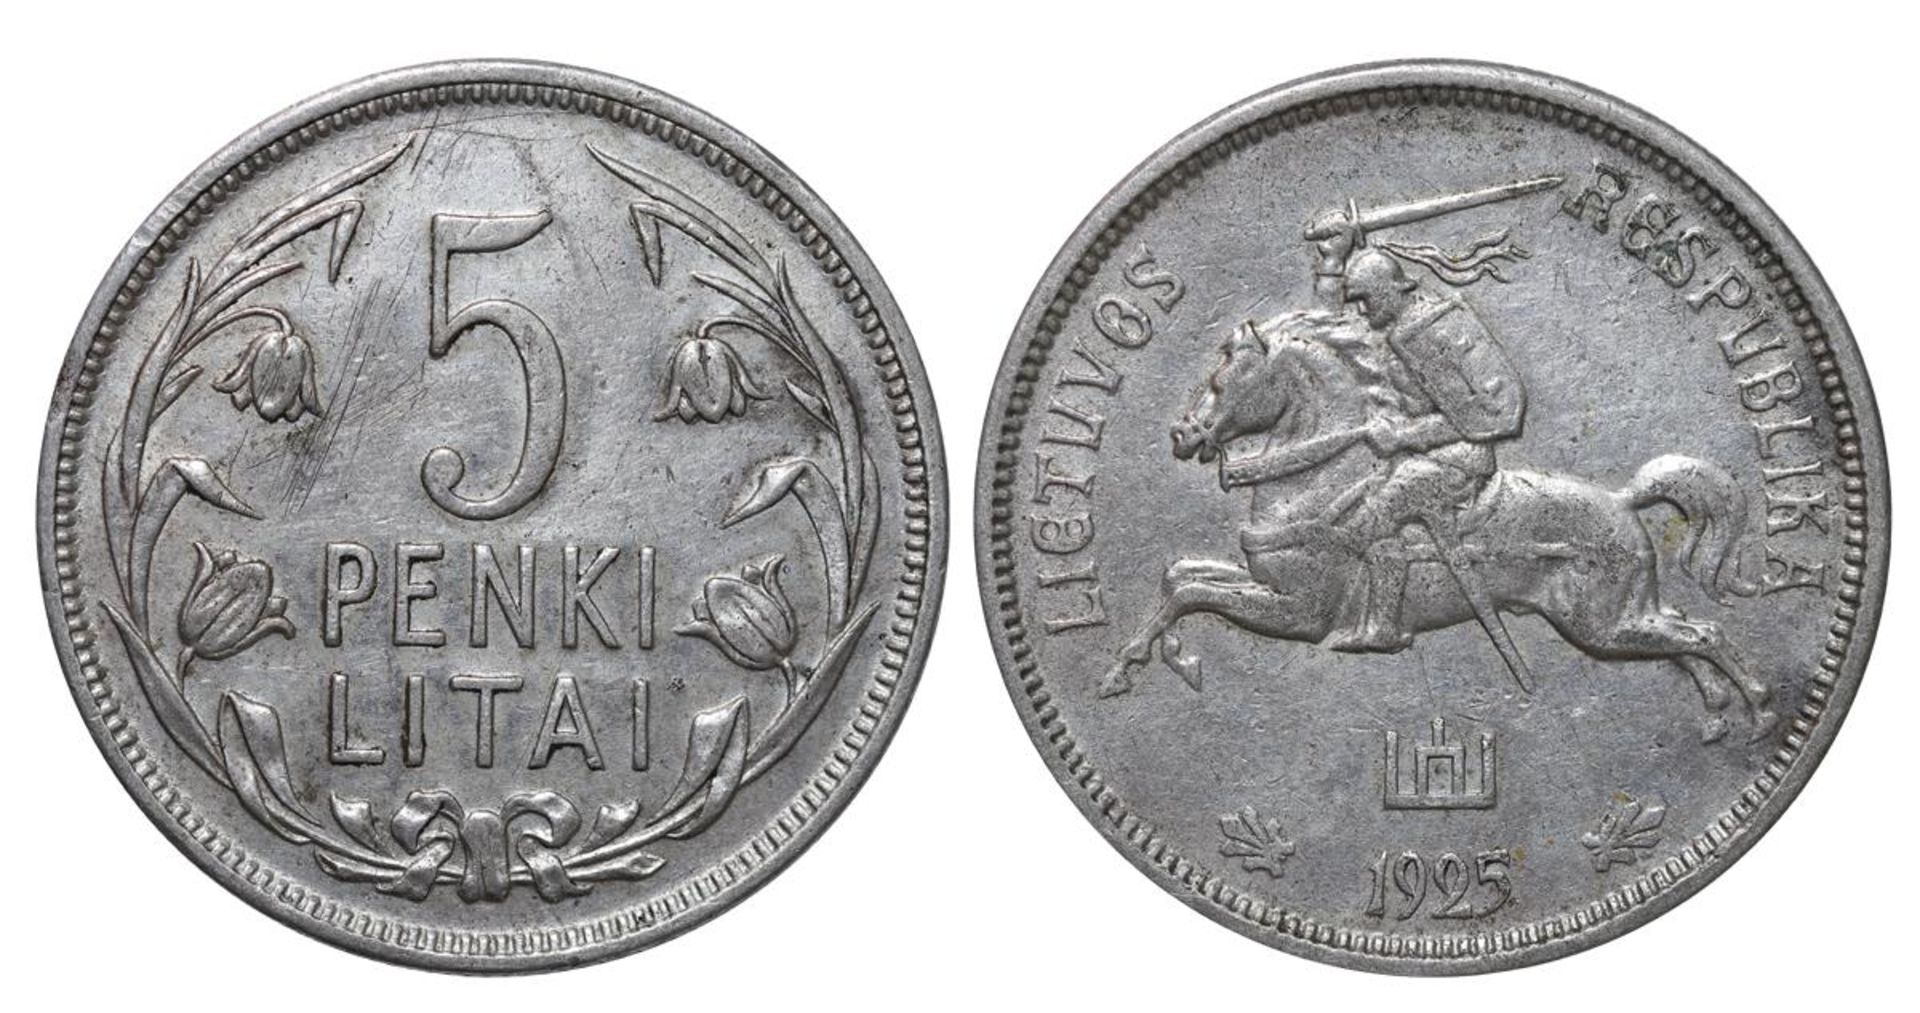 Lithuania, 5 Penki Litai, 1925 year